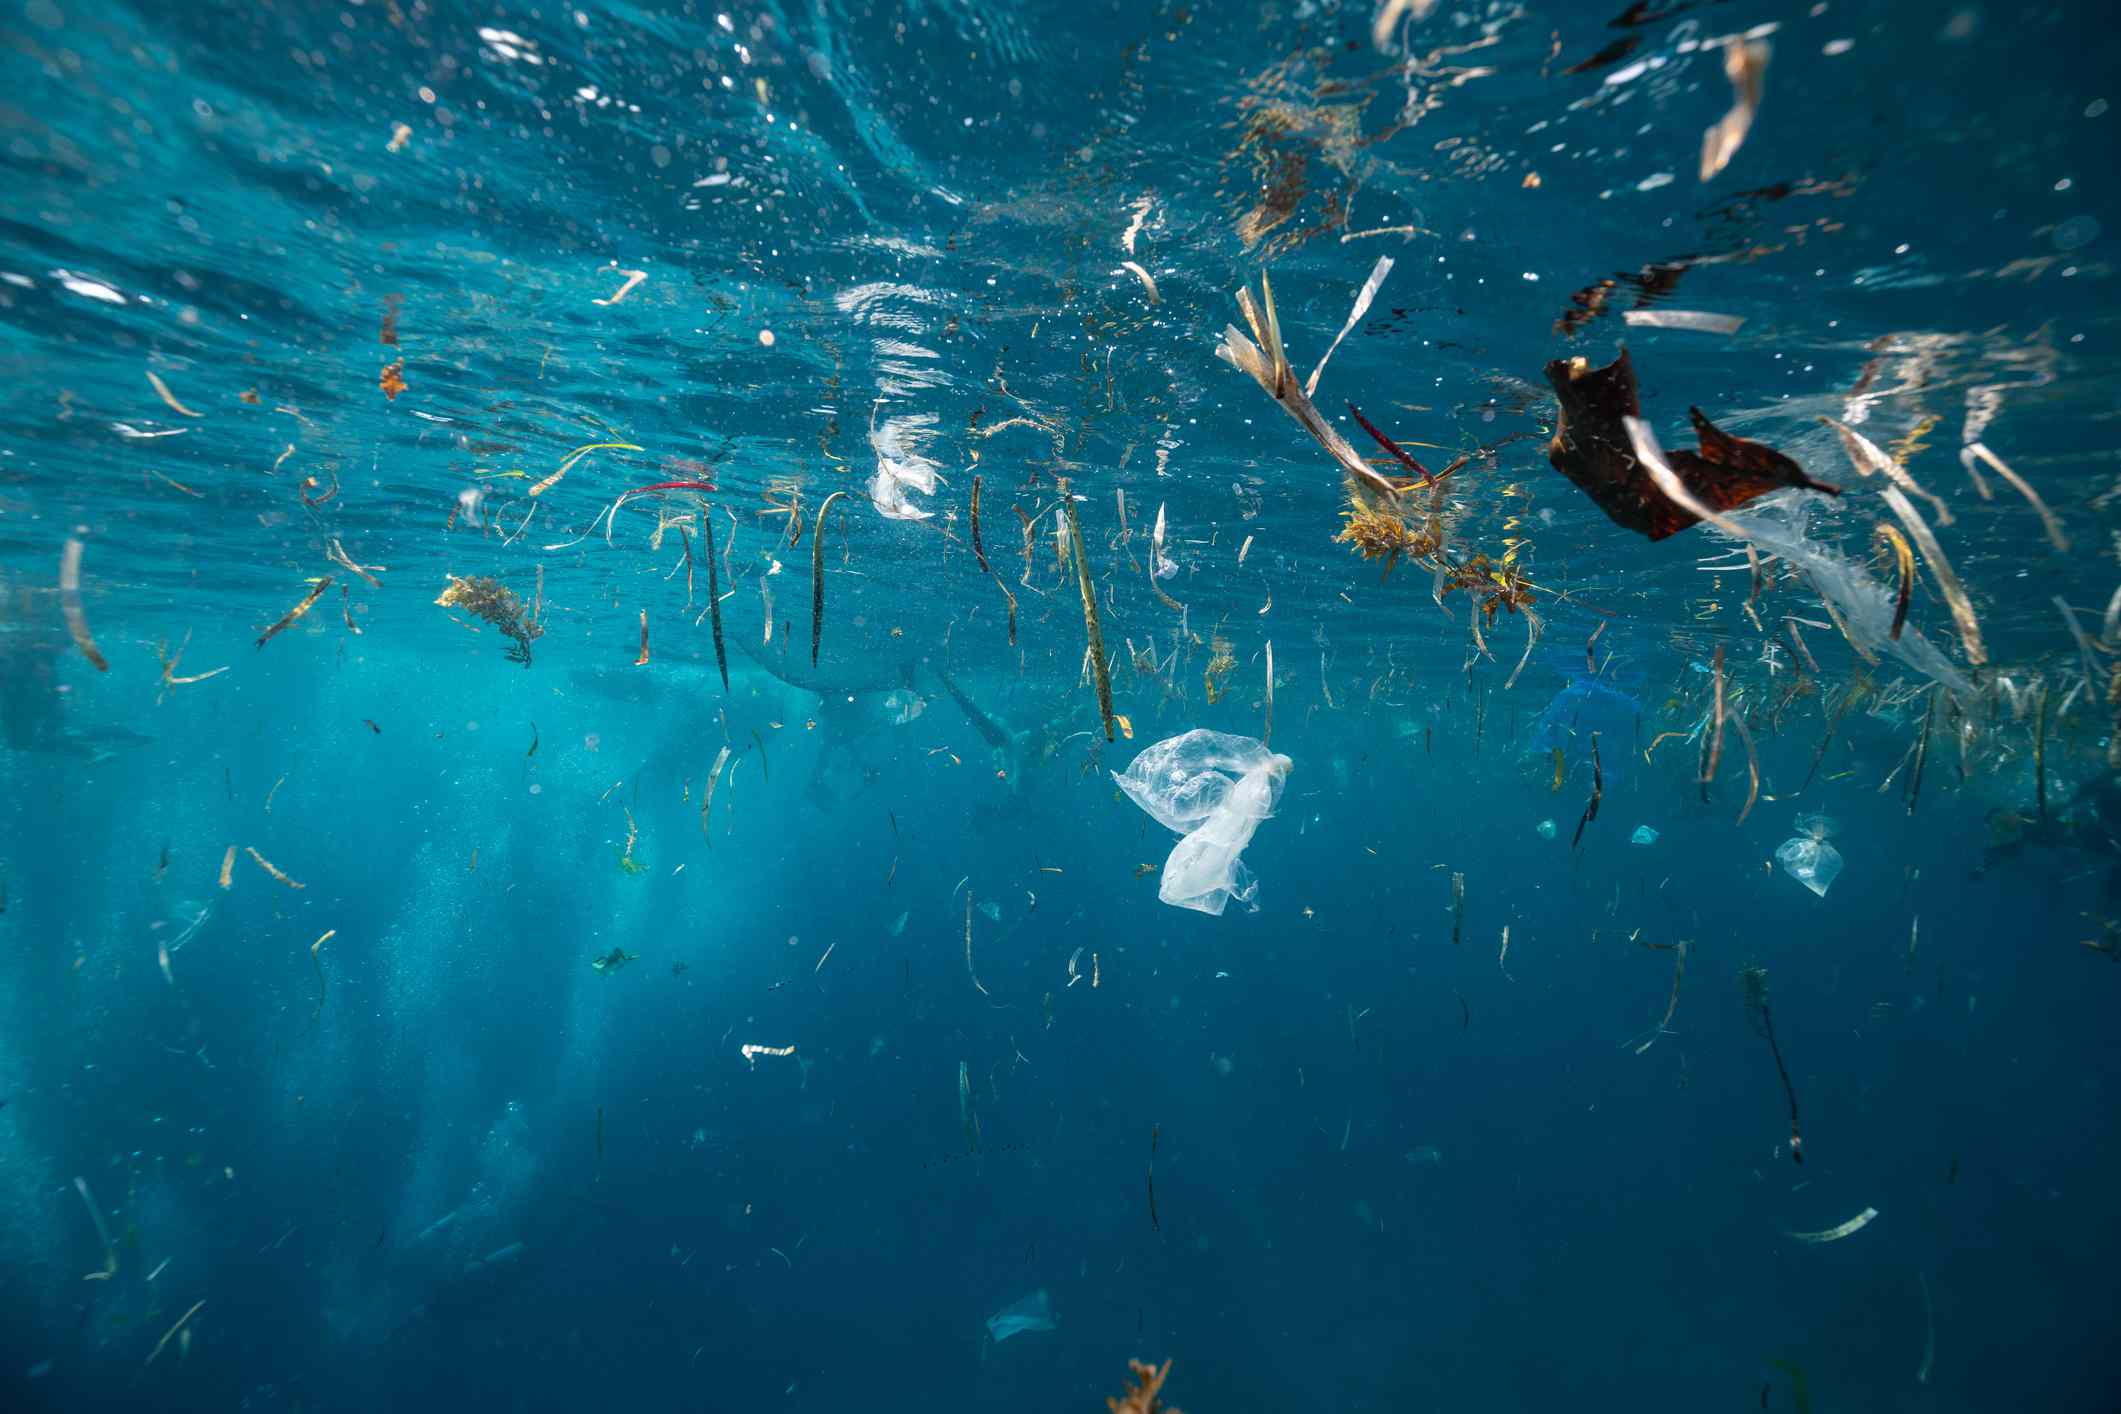 La basura de plástico está nadando en la superficie del agua rhe - foto de archivo